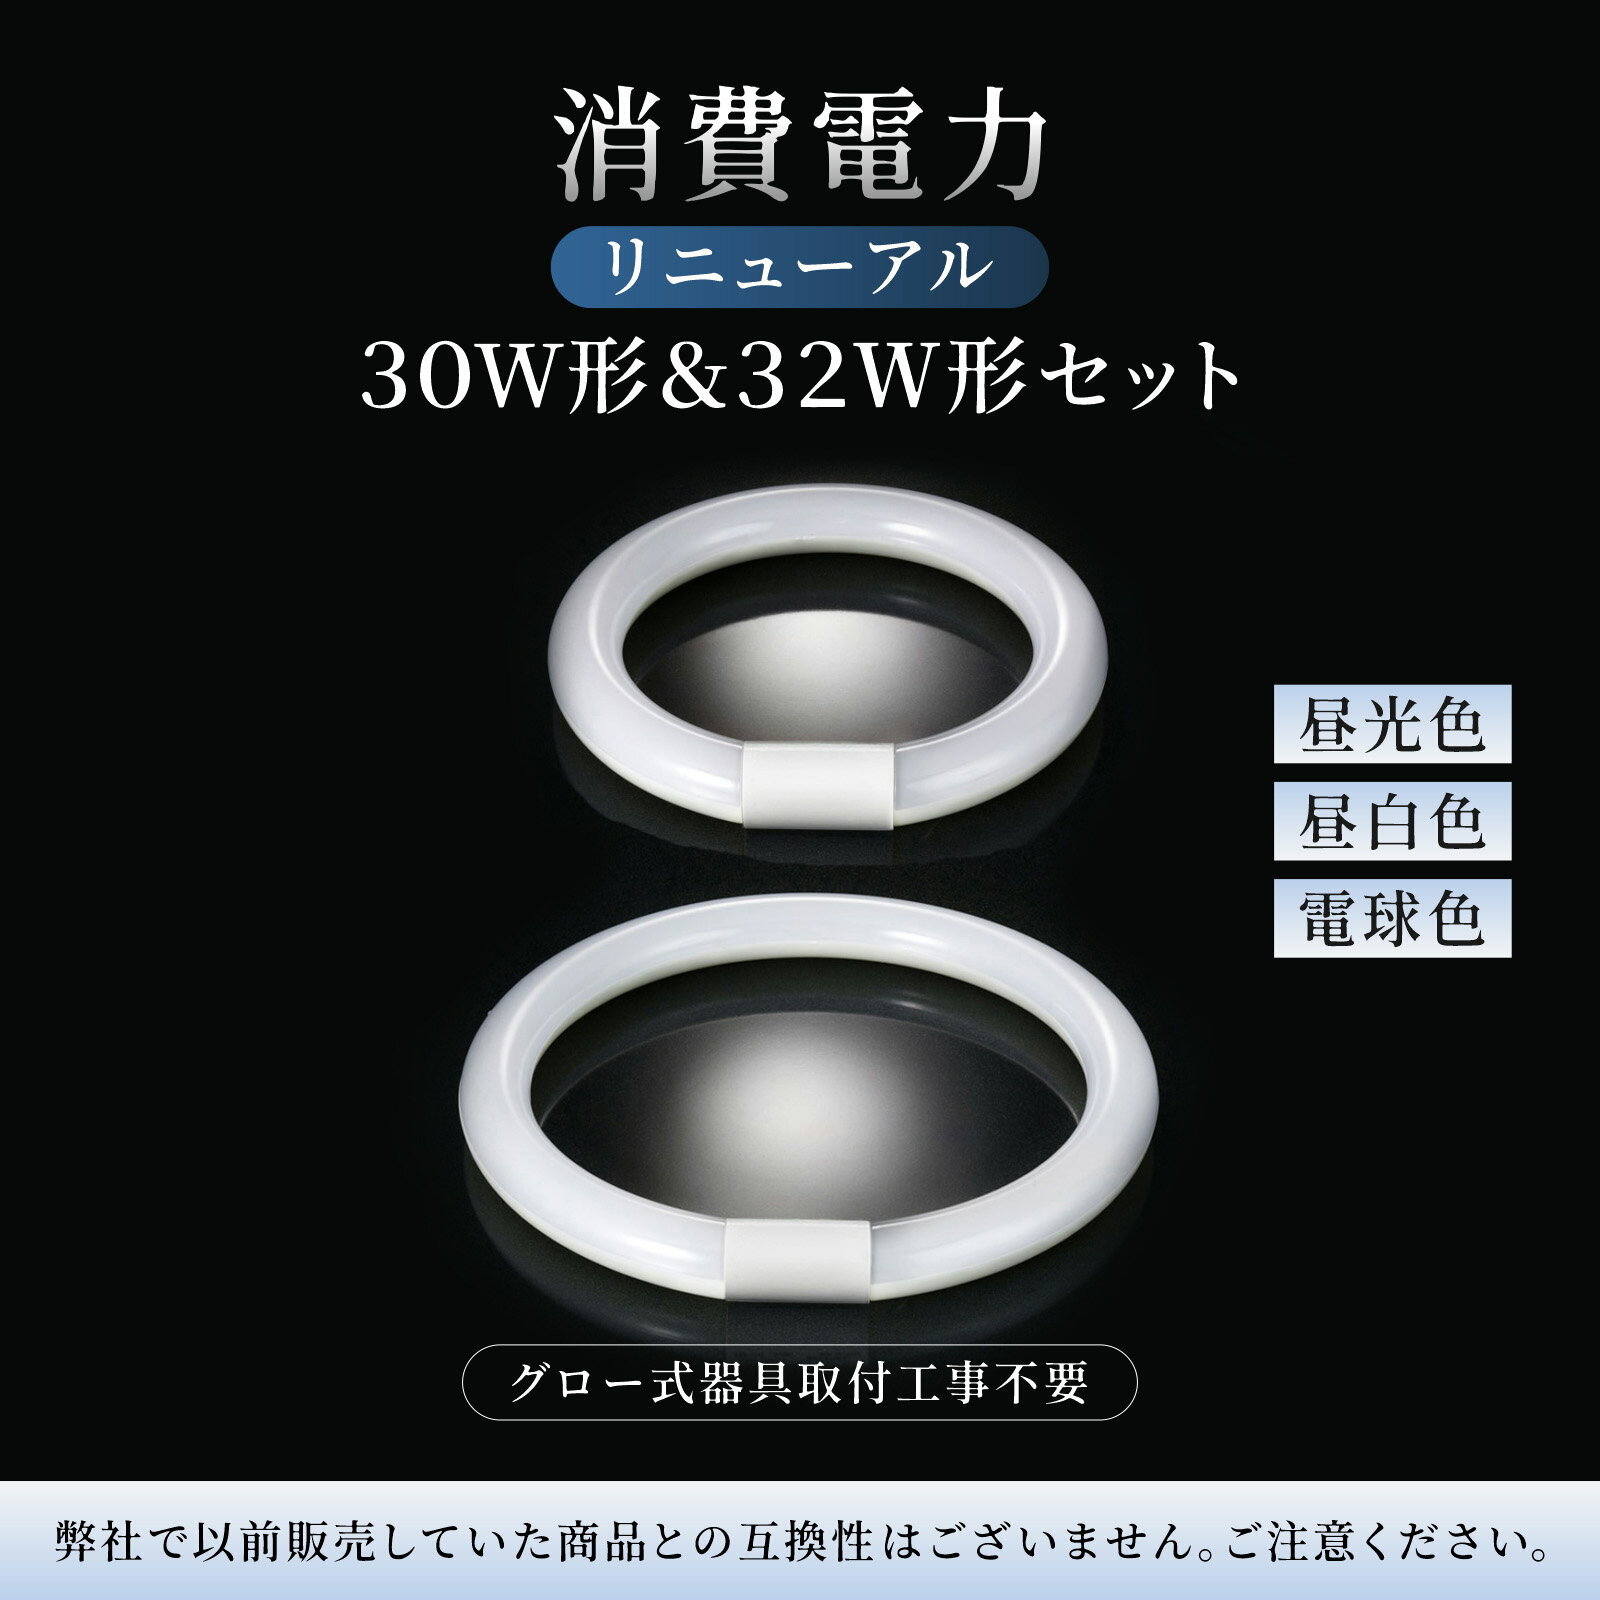 led蛍光灯丸型30w形 昼白色 LEDランプ丸形30W型 LED蛍光灯円形型 FCL30W代替 高輝度 グロー式工事不要 8個セット